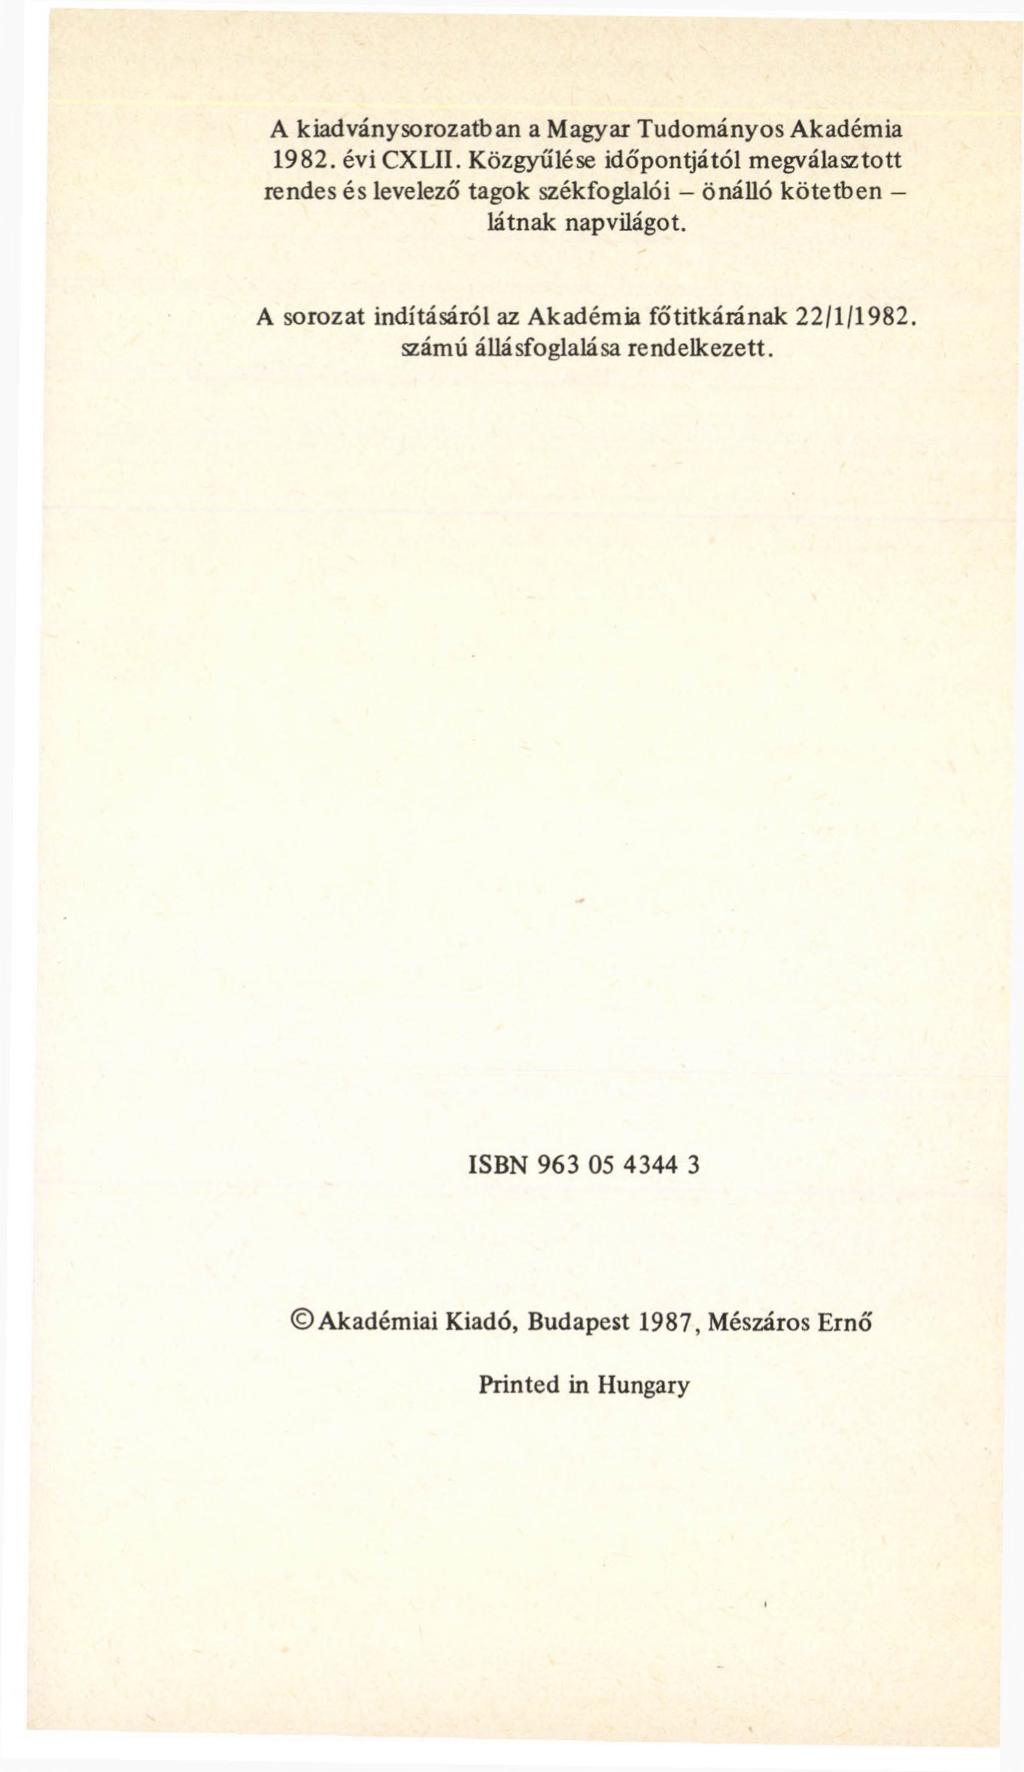 A kiadványsorozatban a Magyar Tudományos Akadémia 1982. évicxlii. Közgyűlése időpontjától megválasztott rendes és levelező tagok székfoglalói önálló kötetben látnak napvilágot.